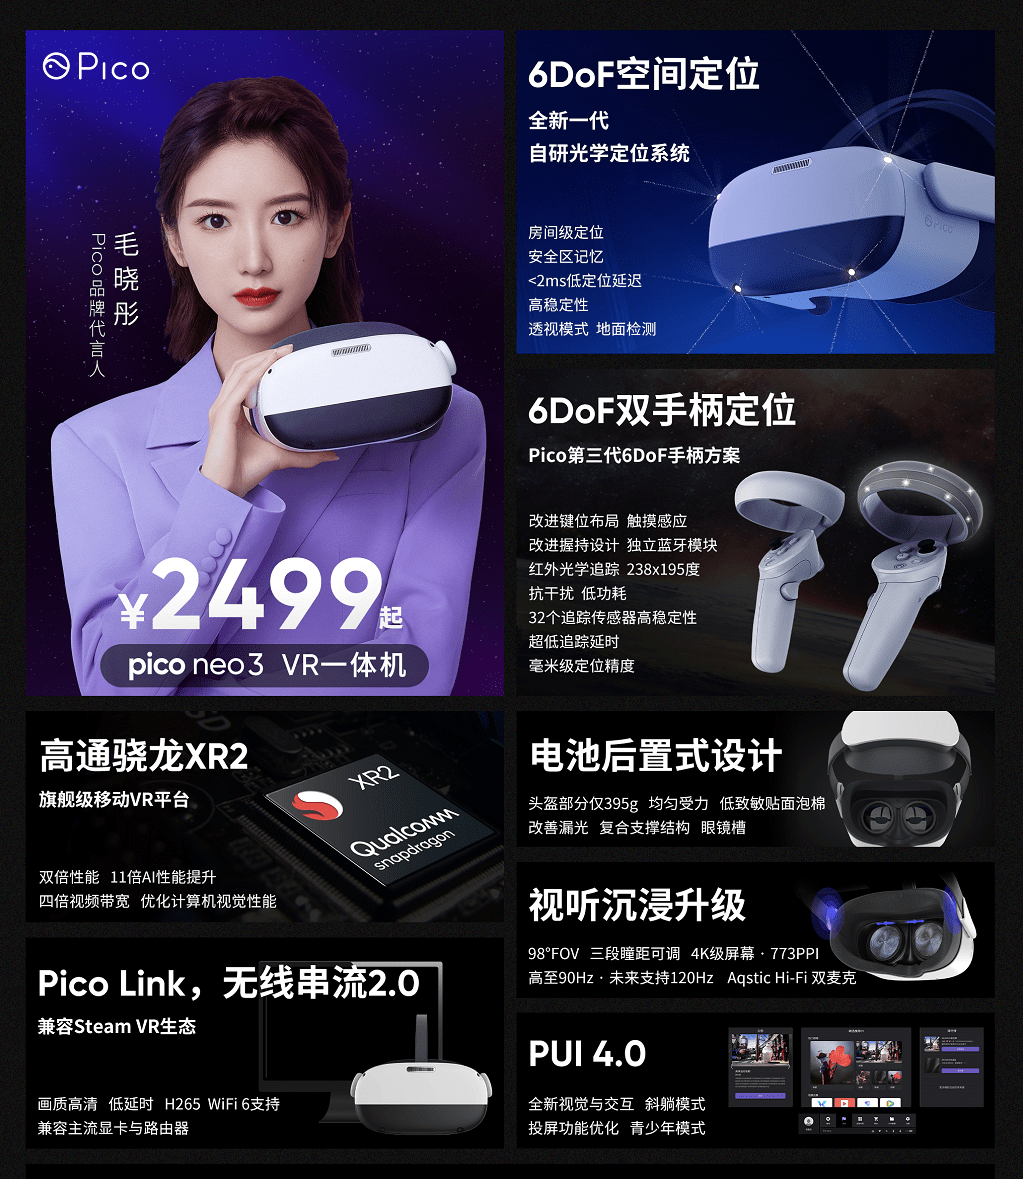 2499 元起，Pico Neo 3/Pro VR 一体机发布：支持光学追踪及瞳距调节